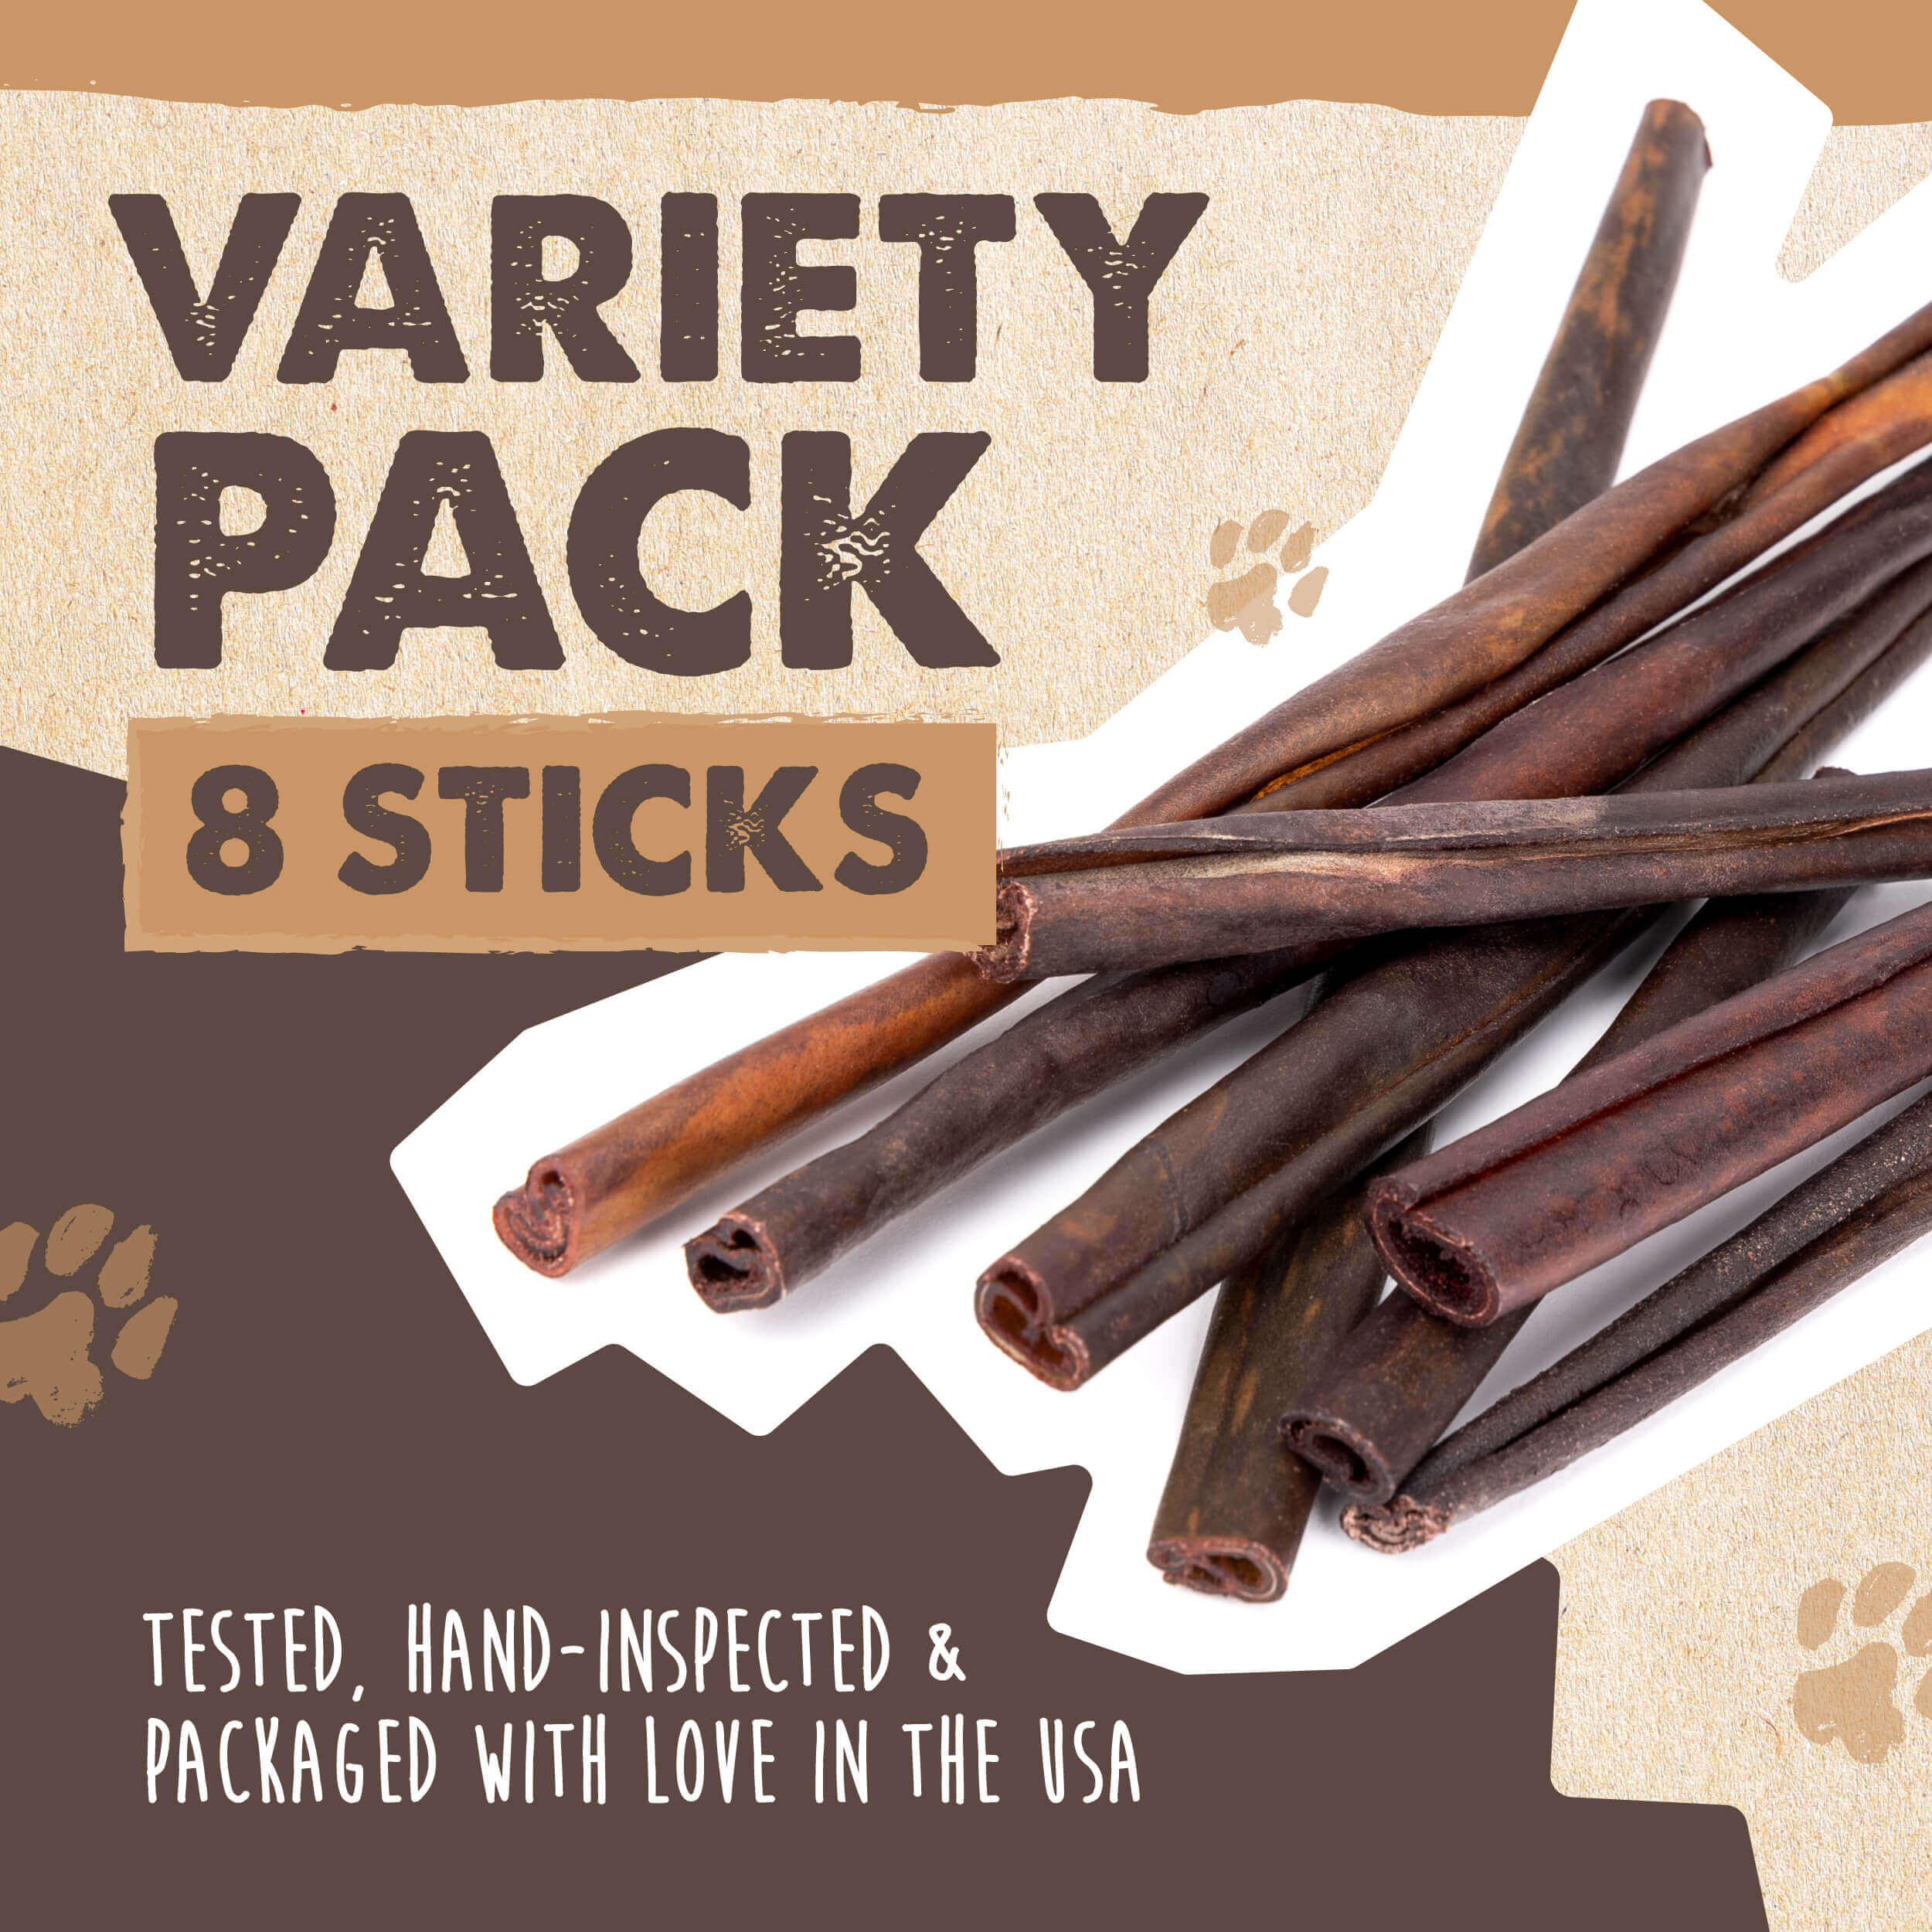 Collagen Sticks (Variety 8 Pack)